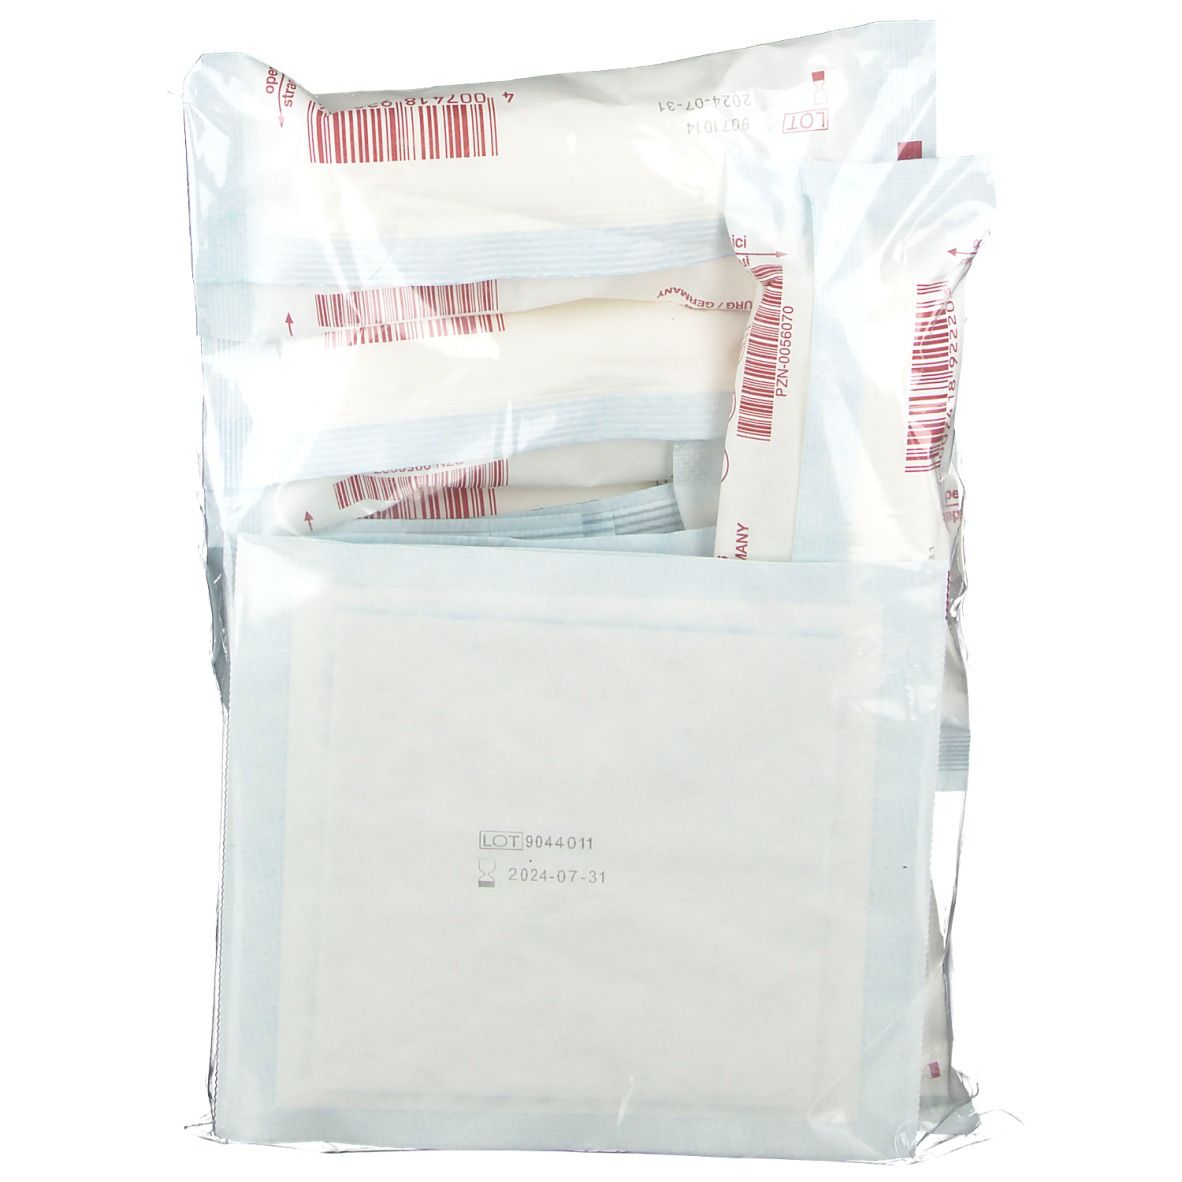 Verbandkasten Nachfüllset für sterile Produkte 13157-C